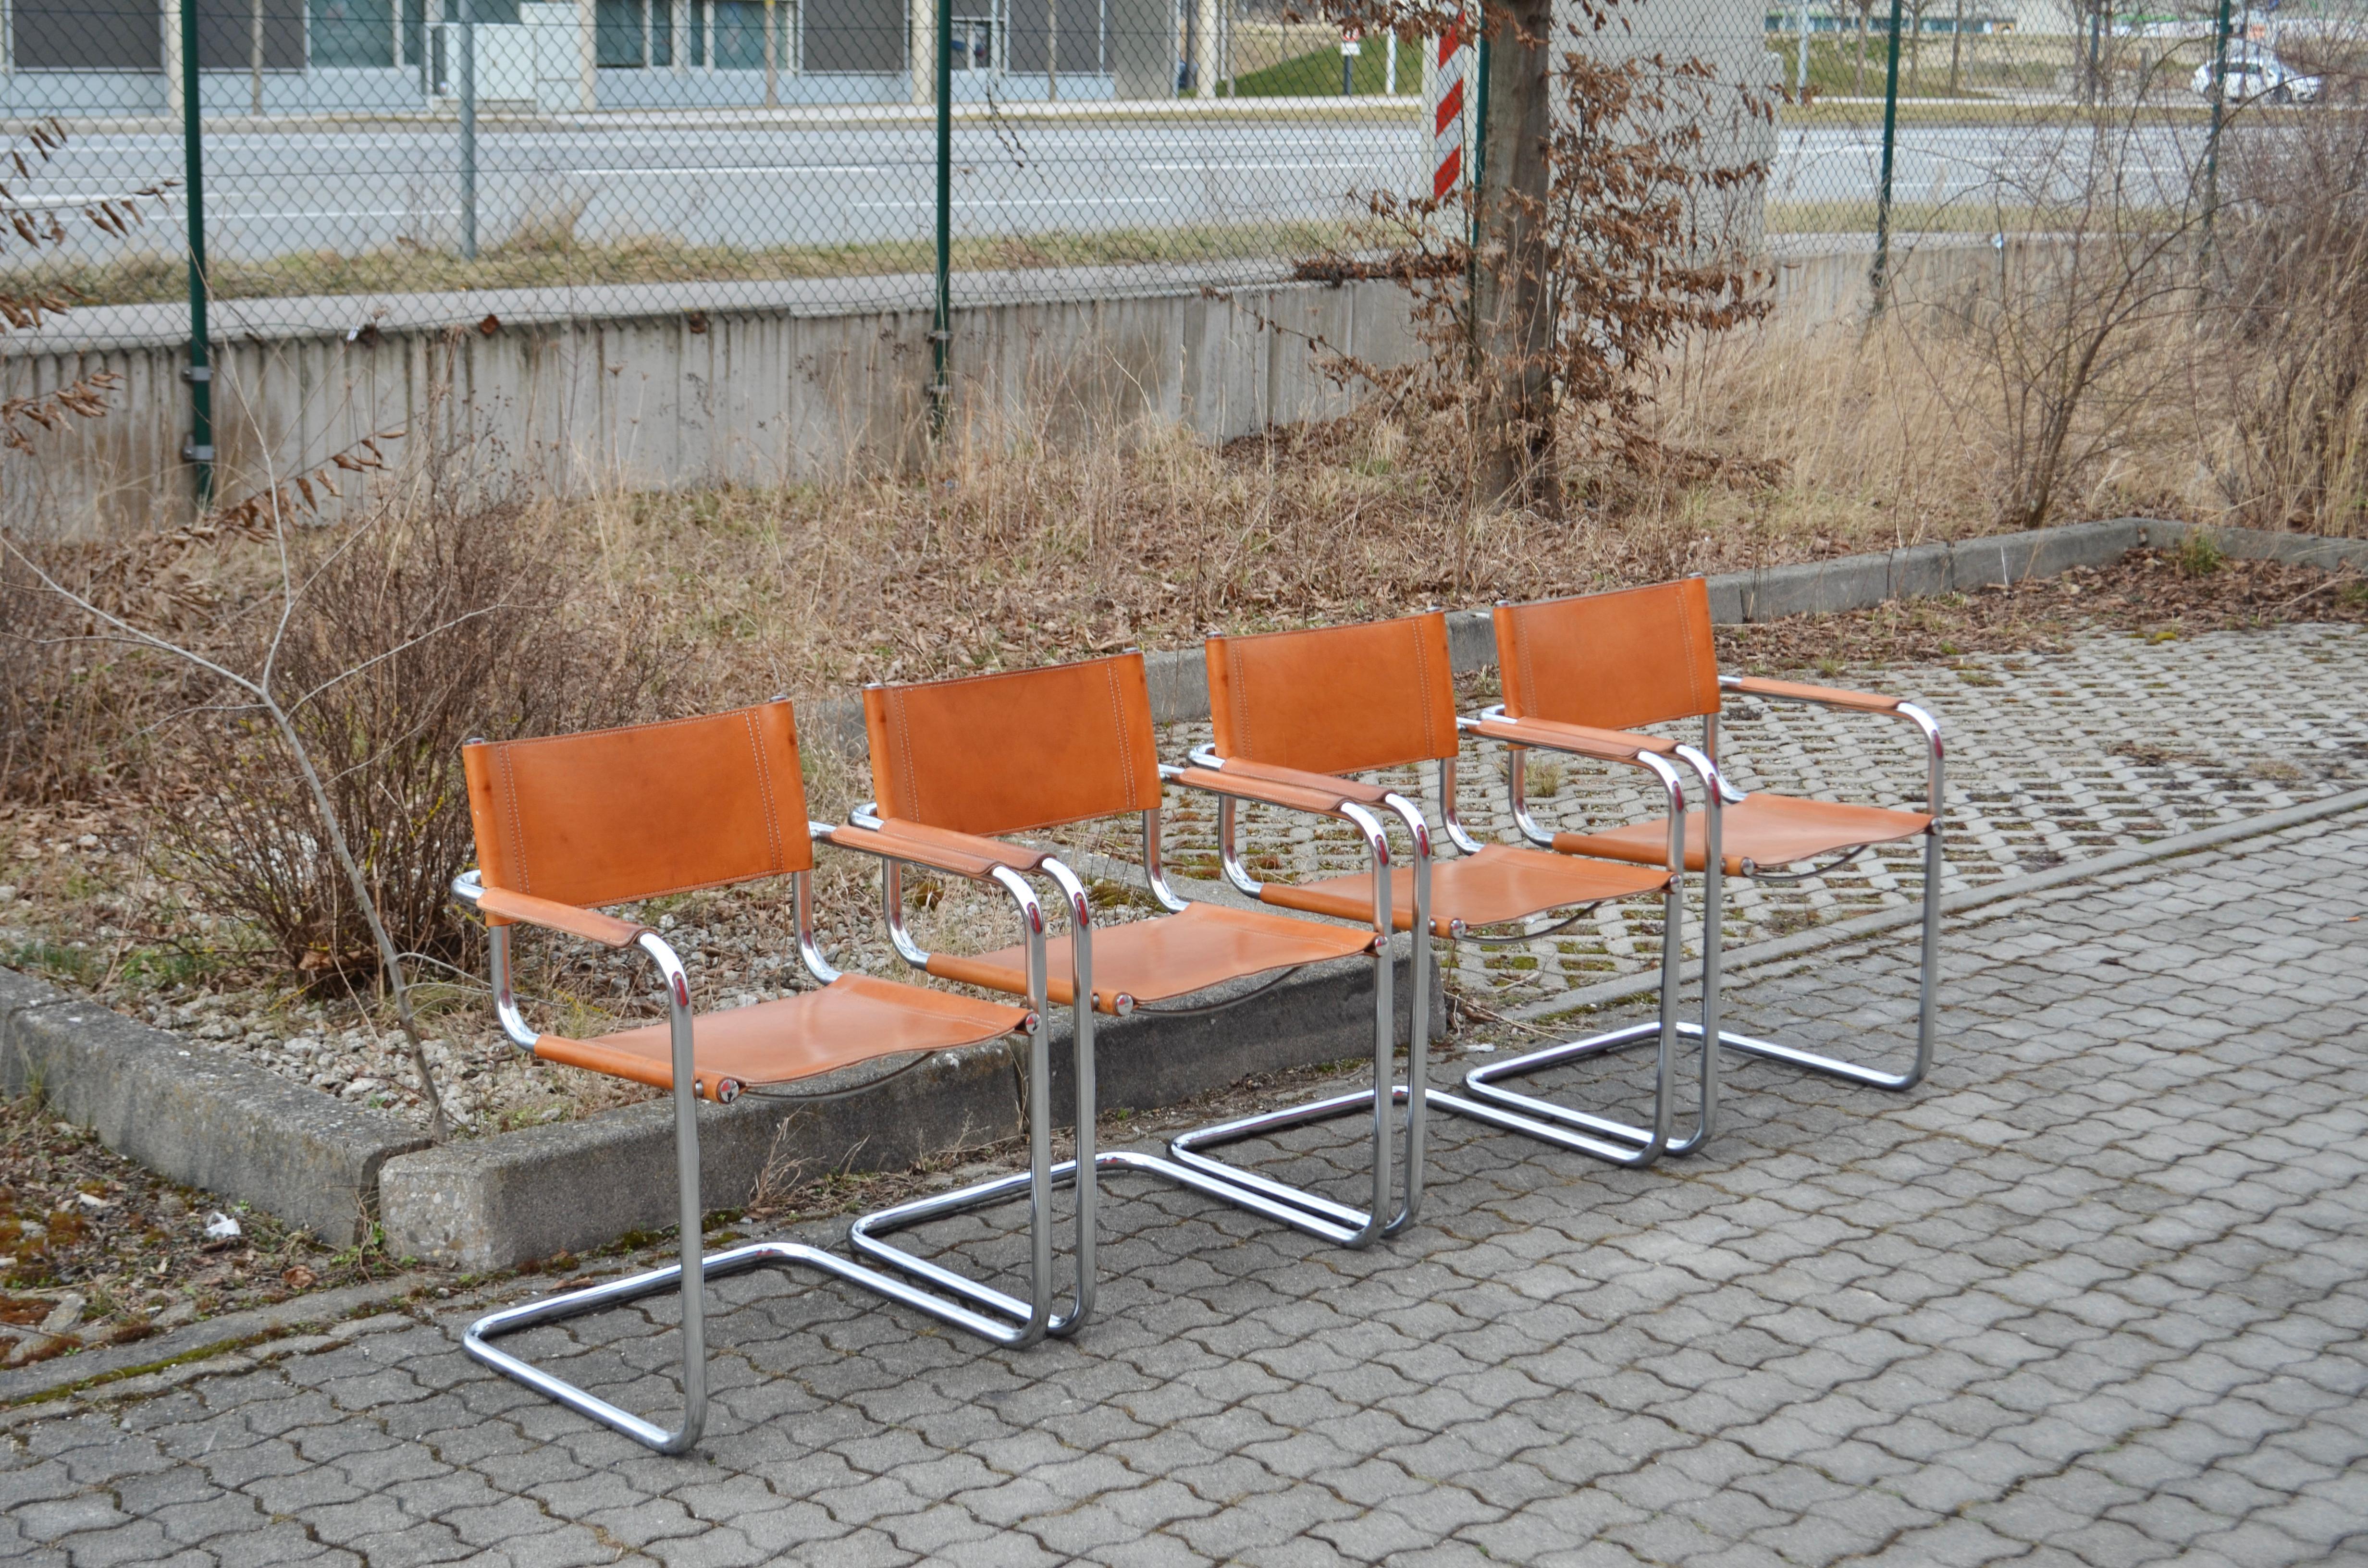 Diese Vintage-Freischwinger sind italienische Klassiker.
In der Manier von Marcel Breuer sind diese Stühle stark von der Bauhaus-Bewegung inspiriert.
Das dicke, pflanzlich gegerbte Sattelleder hat im Laufe der Jahre eine wunderschöne, gut